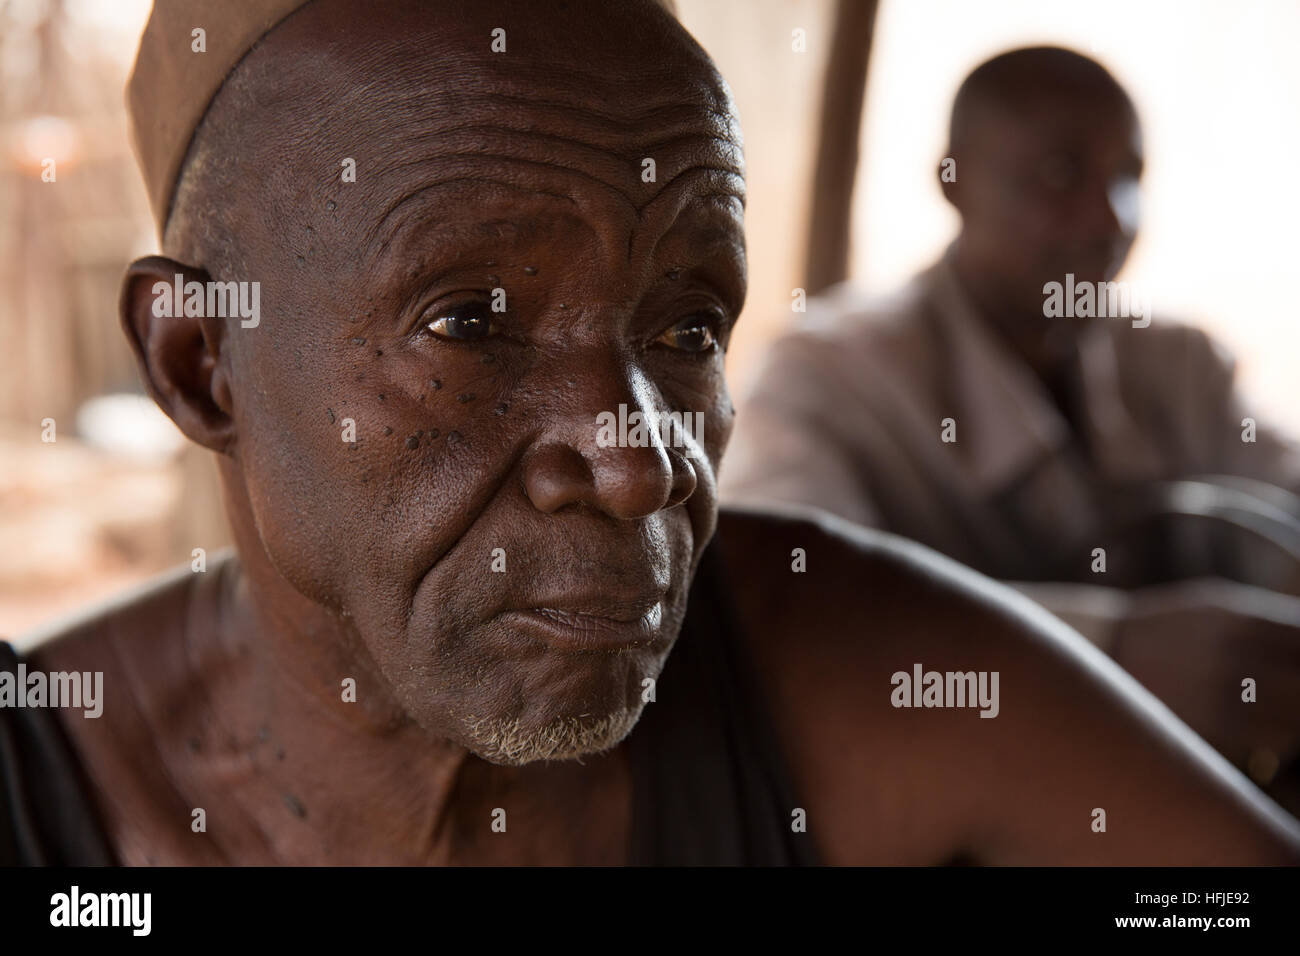 Gbderedou Baranama, Guinée, 2 mai 2015 ; Forgeron Namory Camara, 80 ans, 2 femmes, 12 enfants, à l'extérieur de sa maison. Banque D'Images